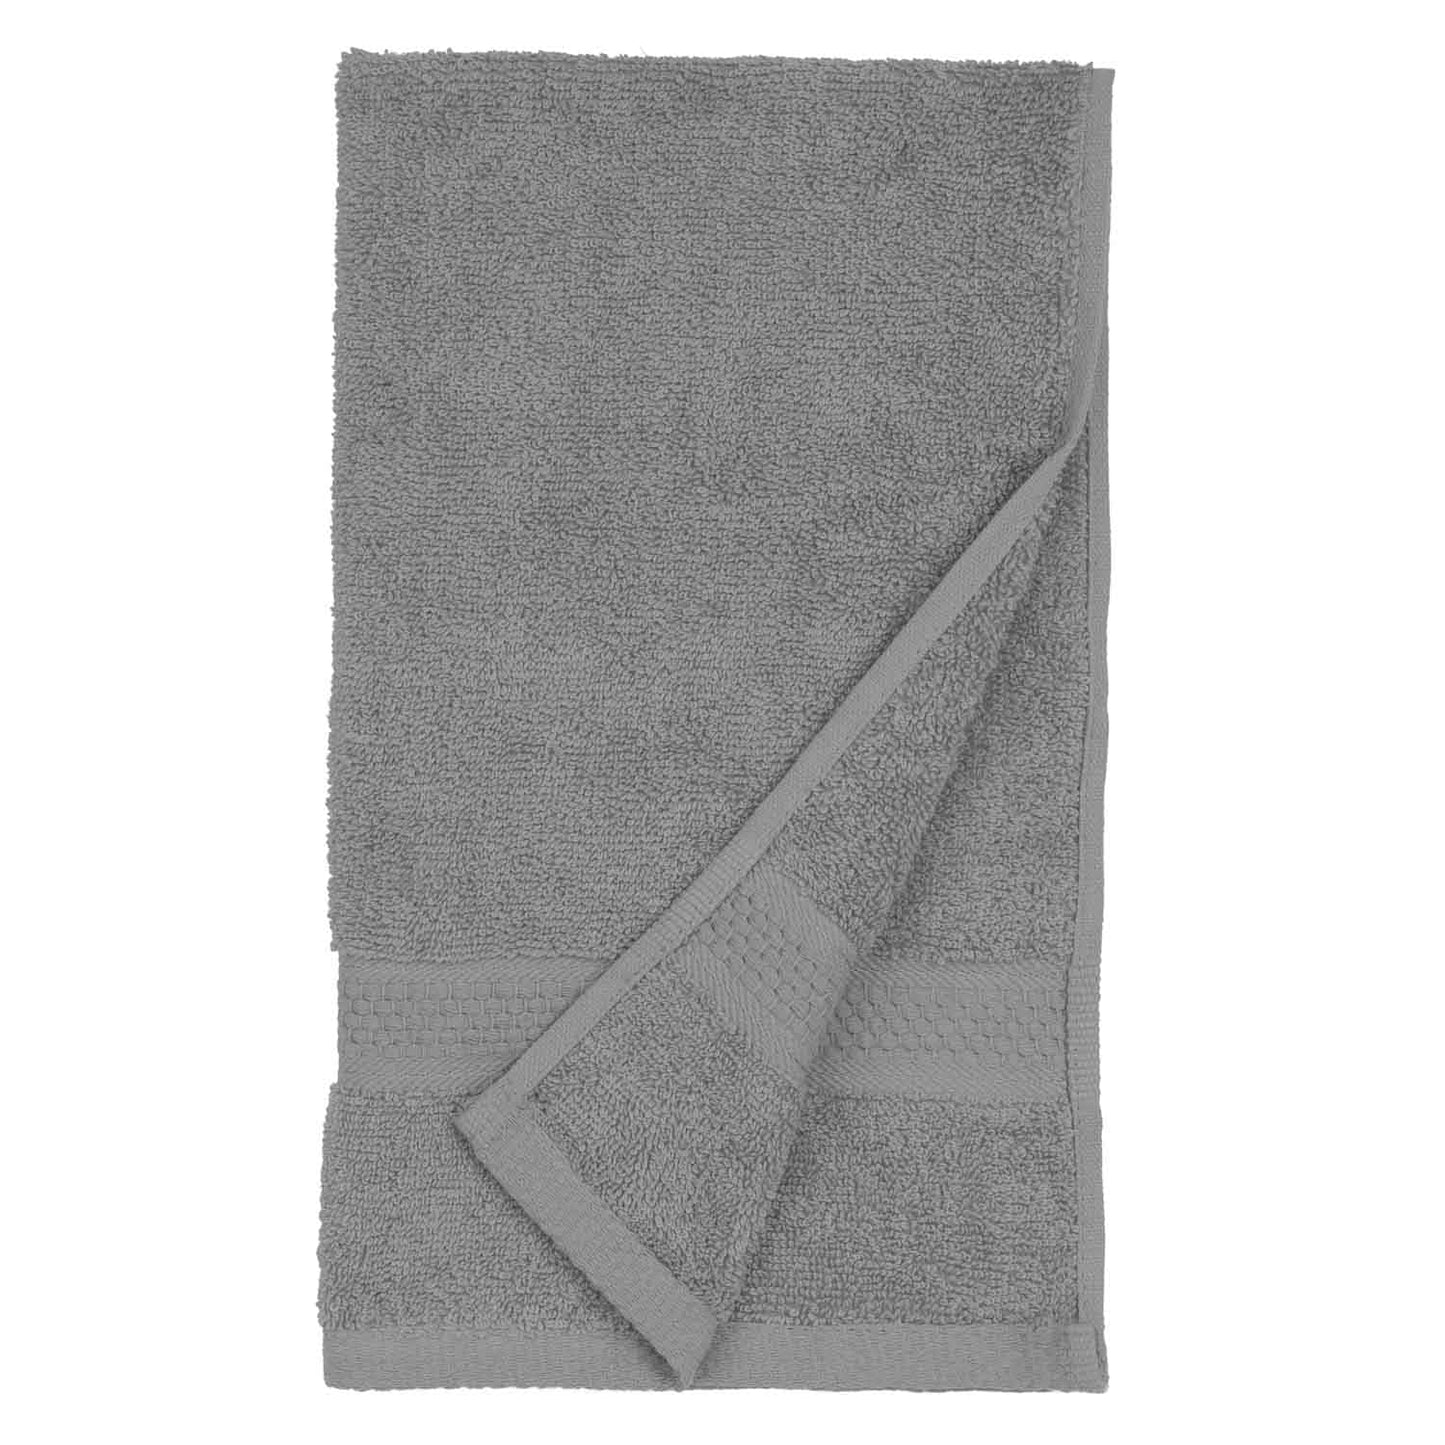 American Dawn | Jumbo 16X28 Inch Flannel Grey Car Wash Towel